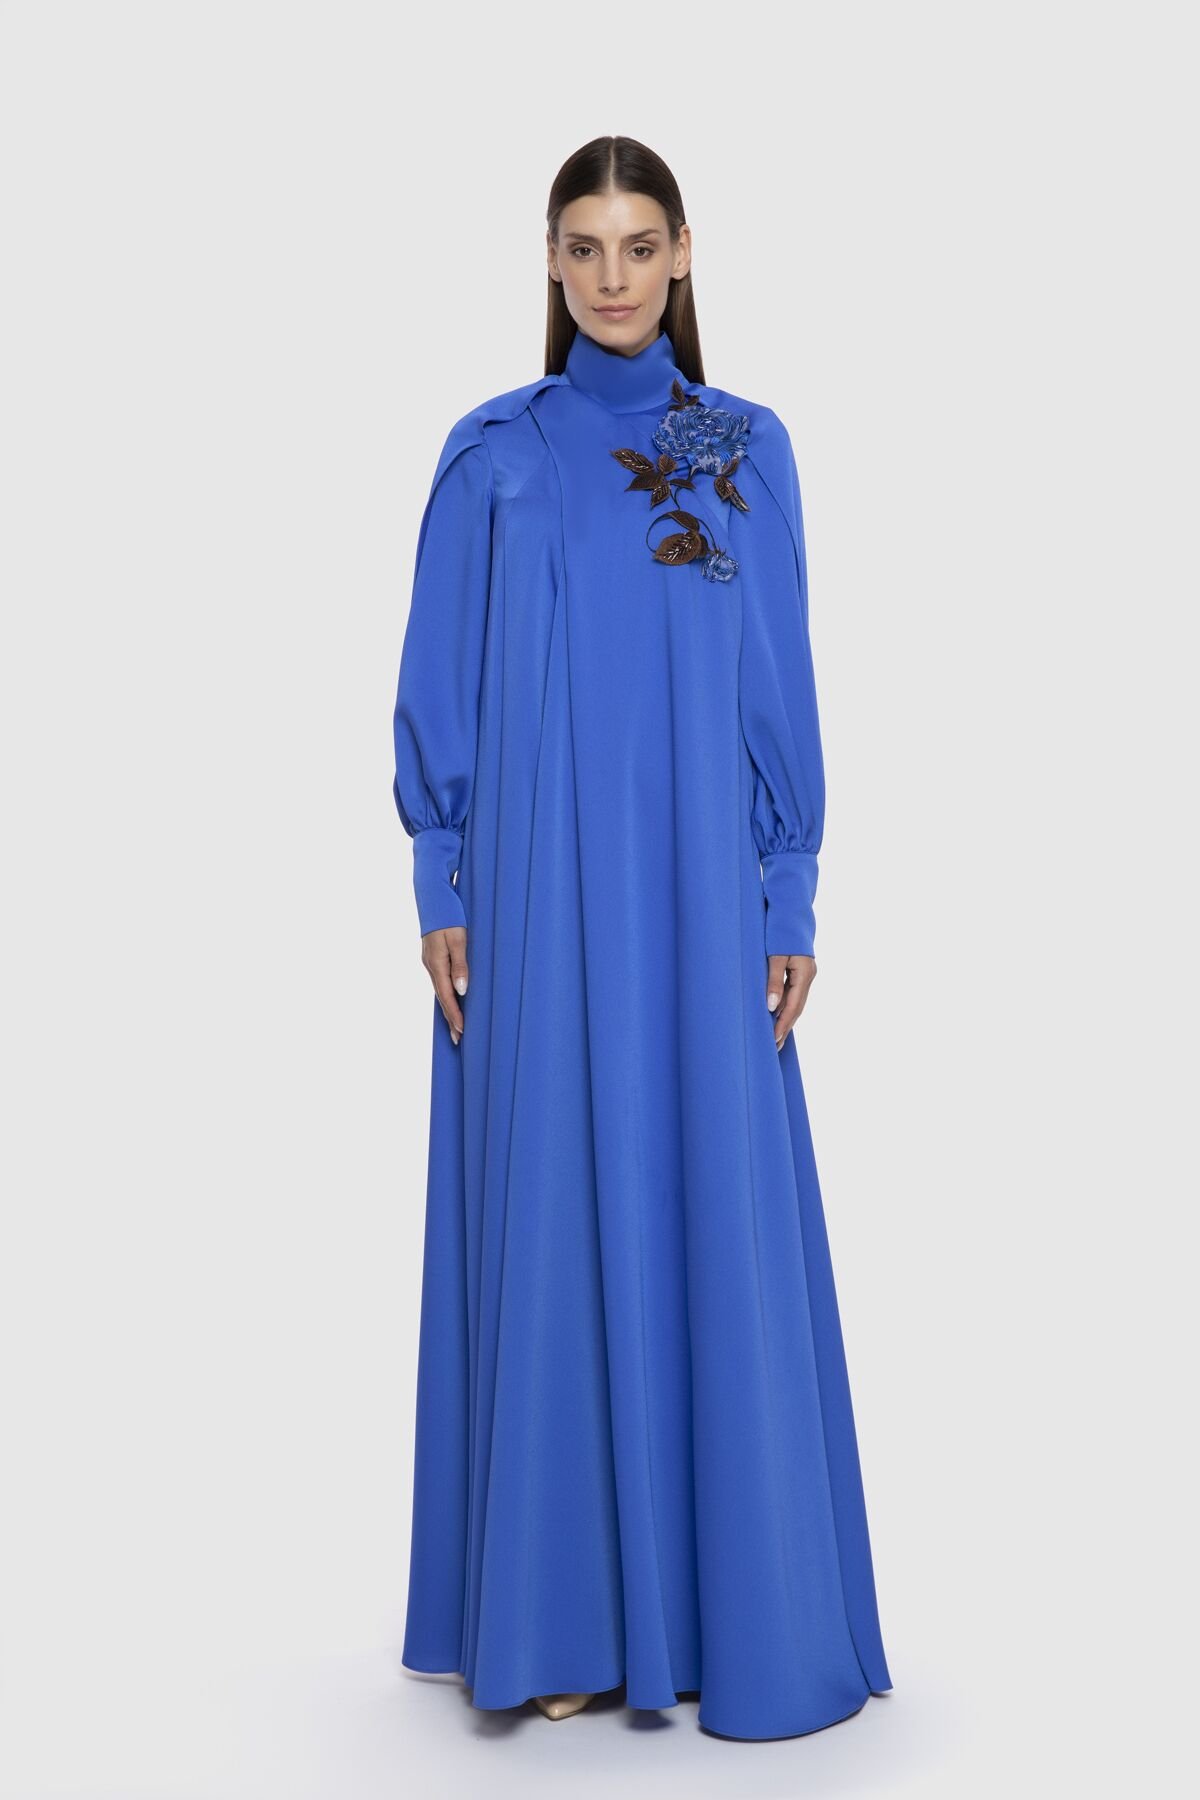 Floral Appliqued Flowy Long Blue Dress